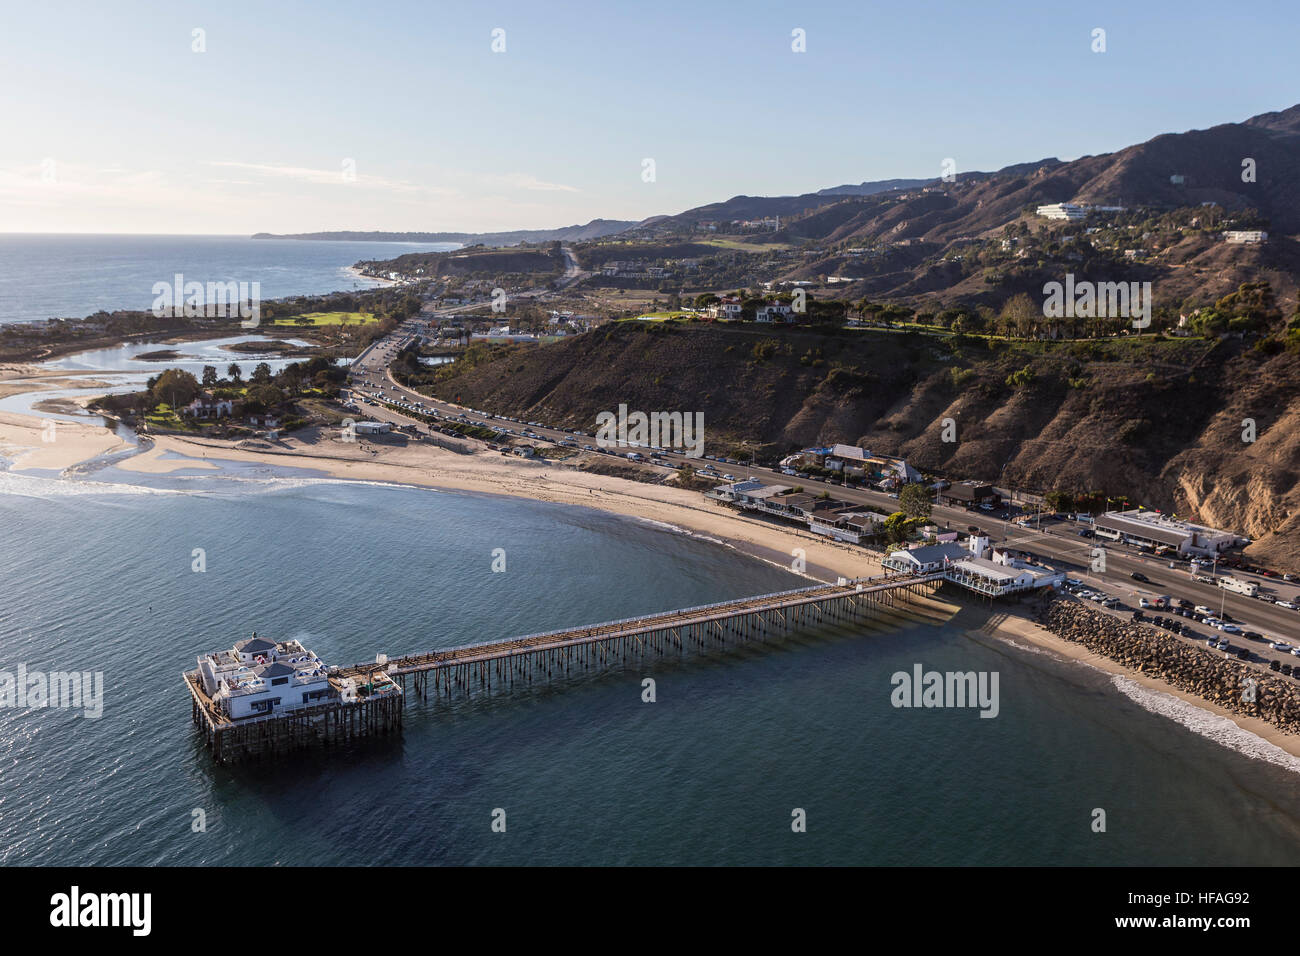 Historique Vue aérienne de Malibu Pier, plages de l'océan Pacifique et de la montagnes de Santa Monica en Californie du Sud. Banque D'Images